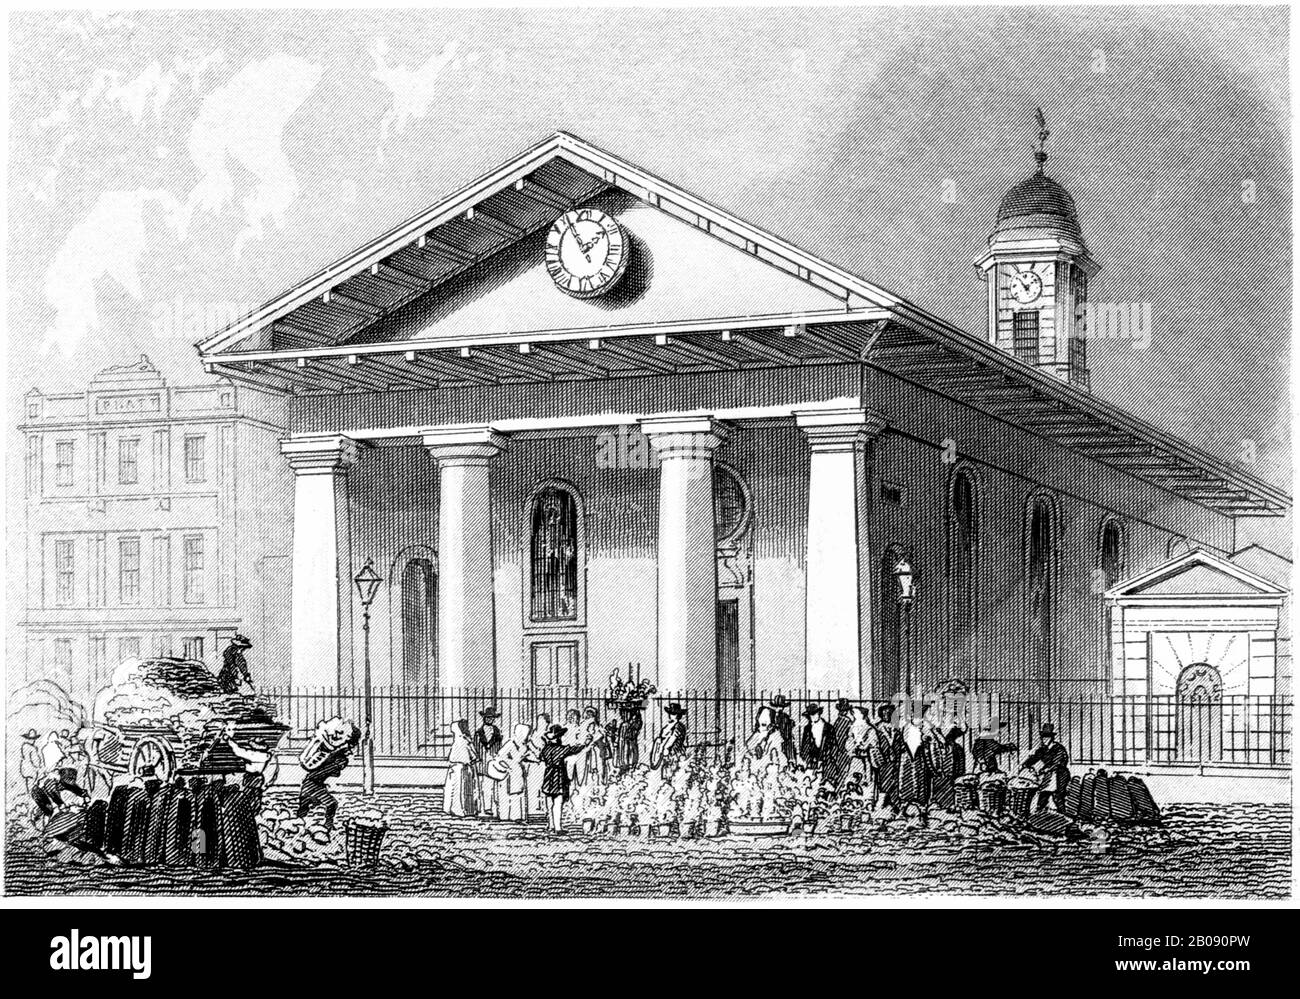 Incisione di St Pauls Covent Garden, Londra scansionata ad alta risoluzione da un libro stampato nel 1851. Si ritiene che questa immagine sia libera da tutti i diritti d'autore Foto Stock